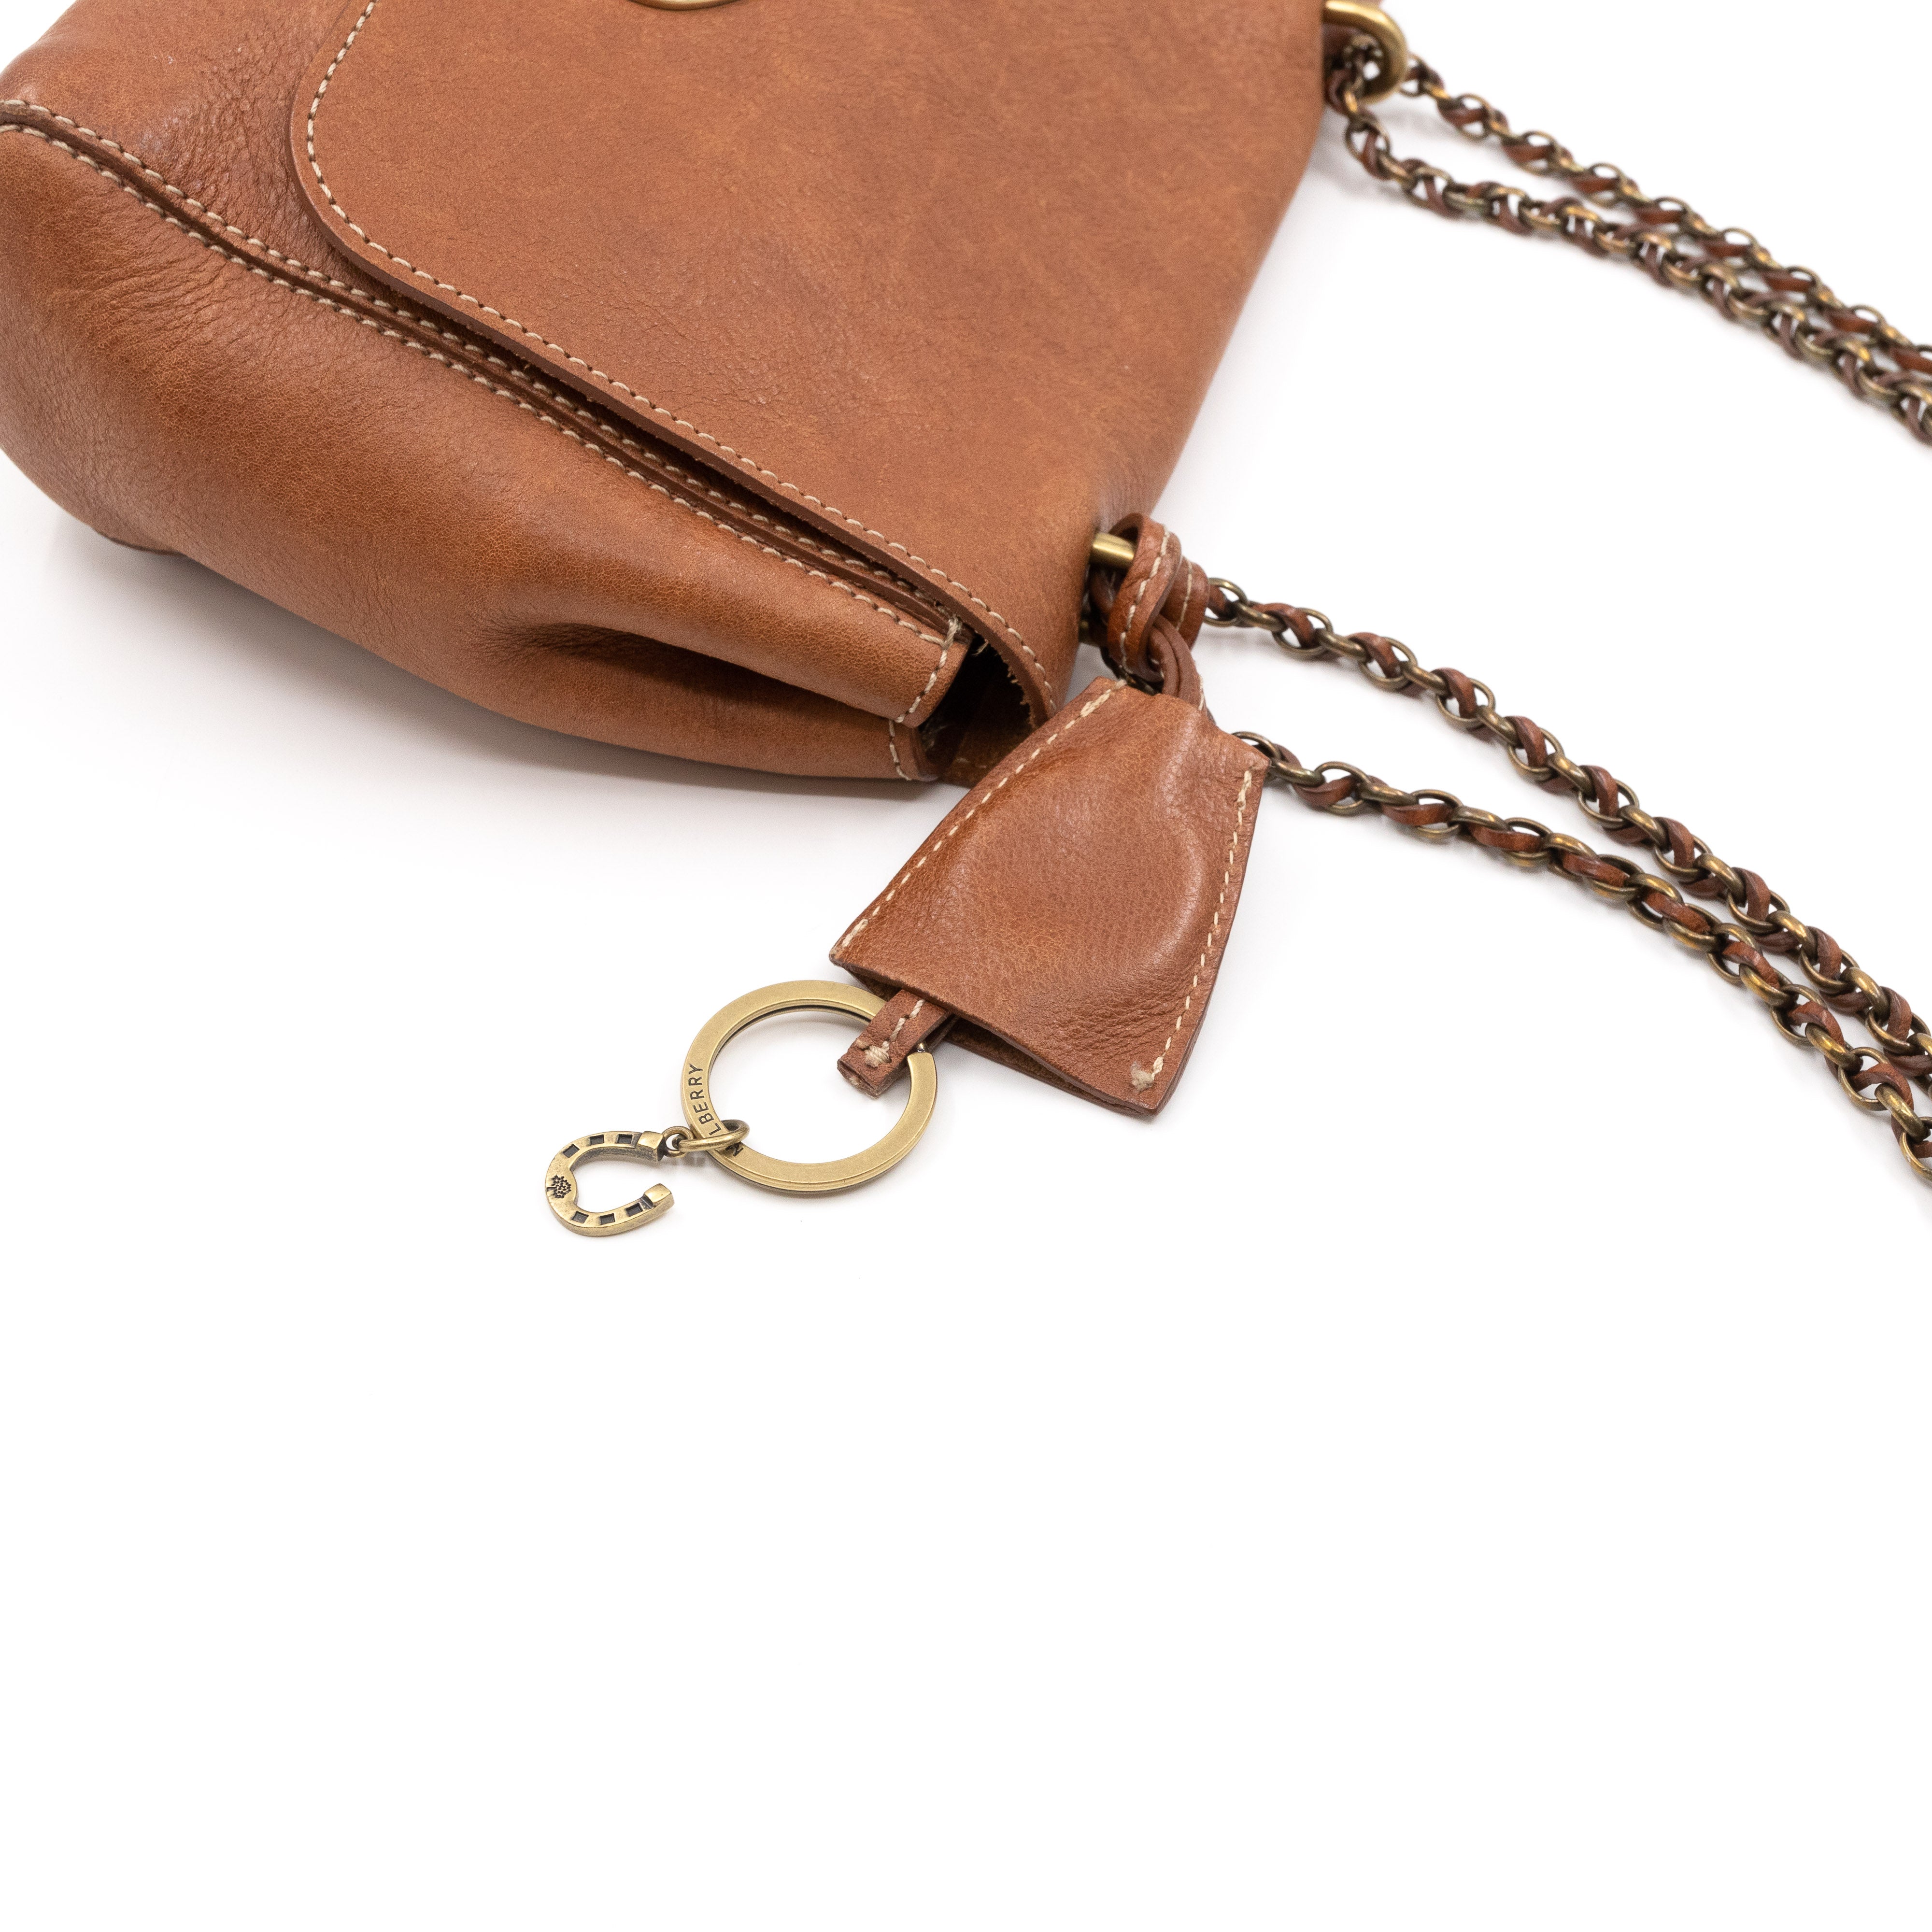 little brown bag purse Bloomingdales handbag vinyl plastic bag | eBay